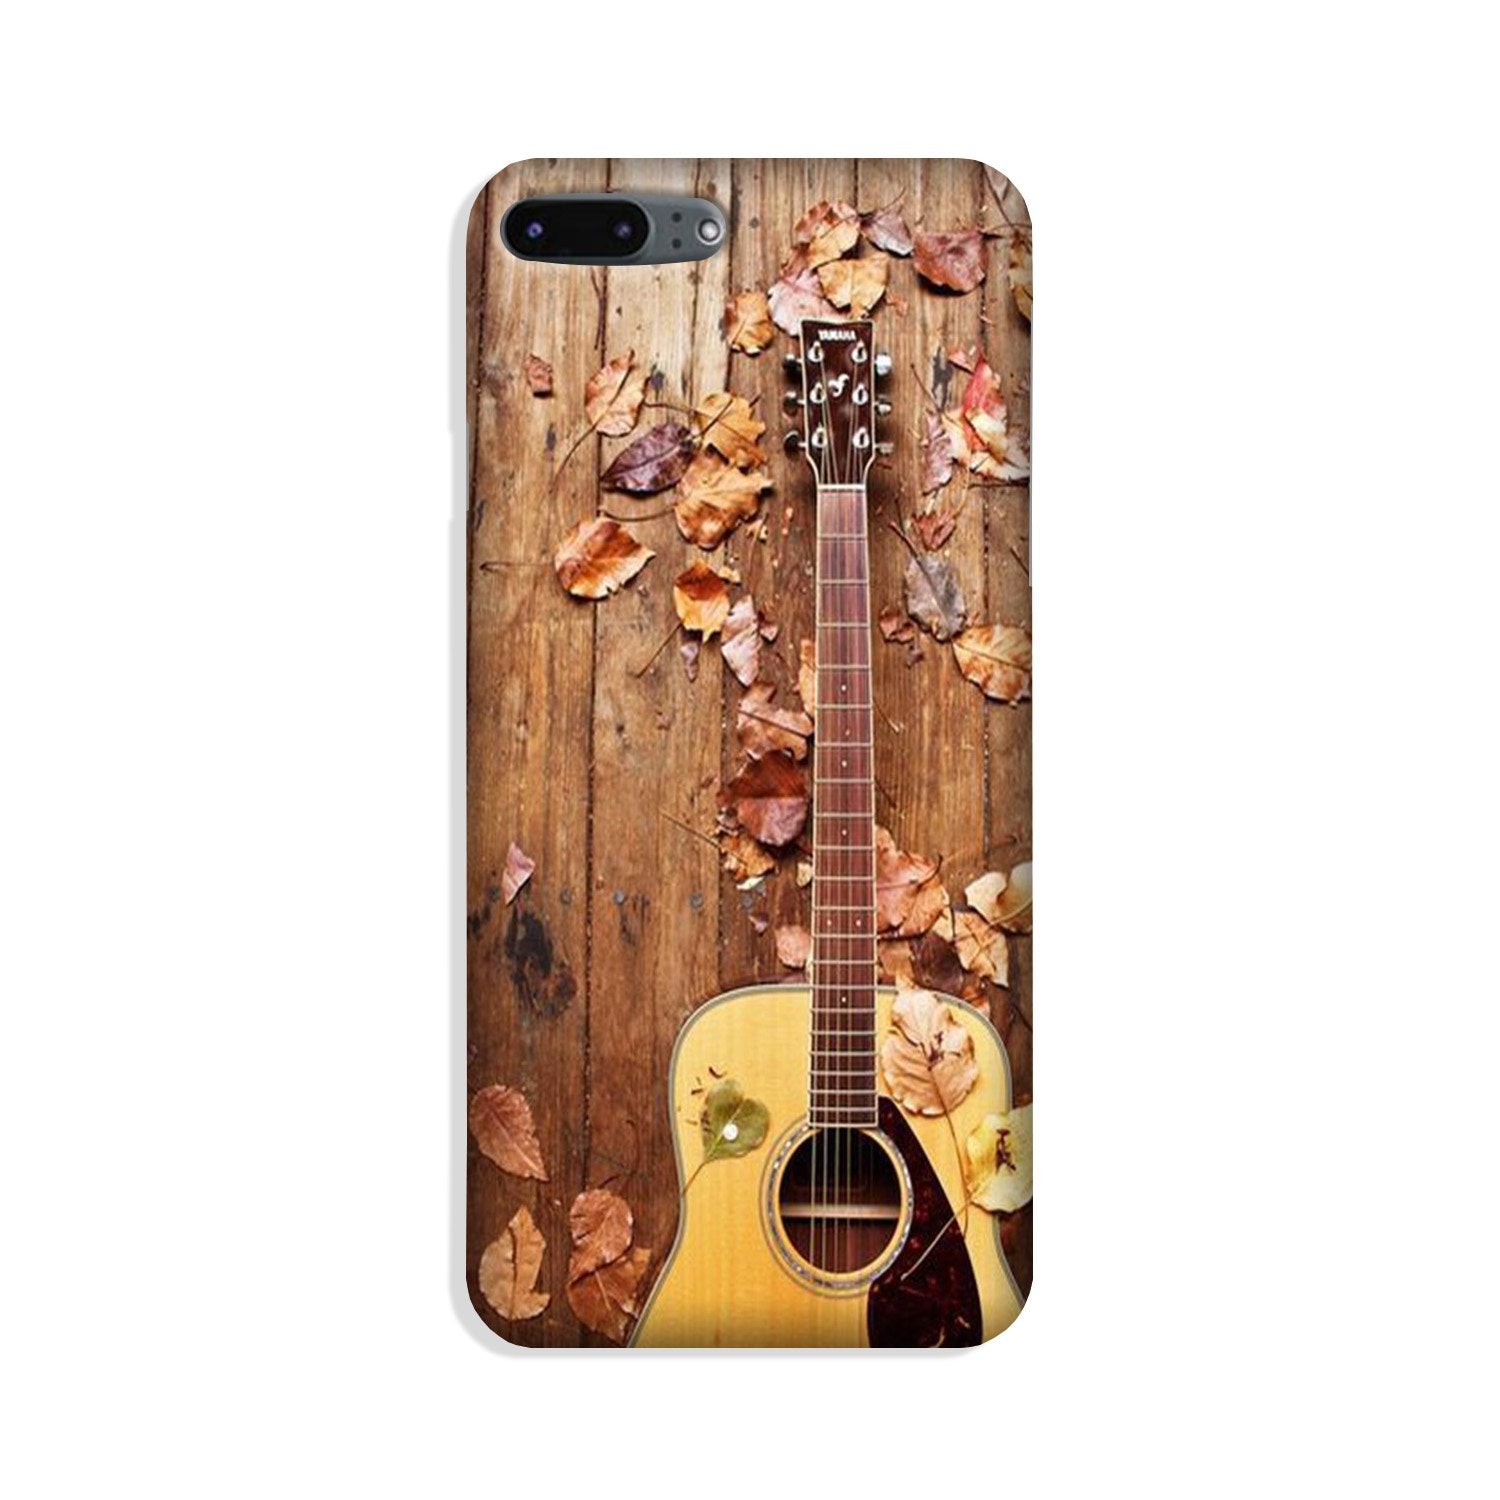 Guitar Case for iPhone 8 Plus